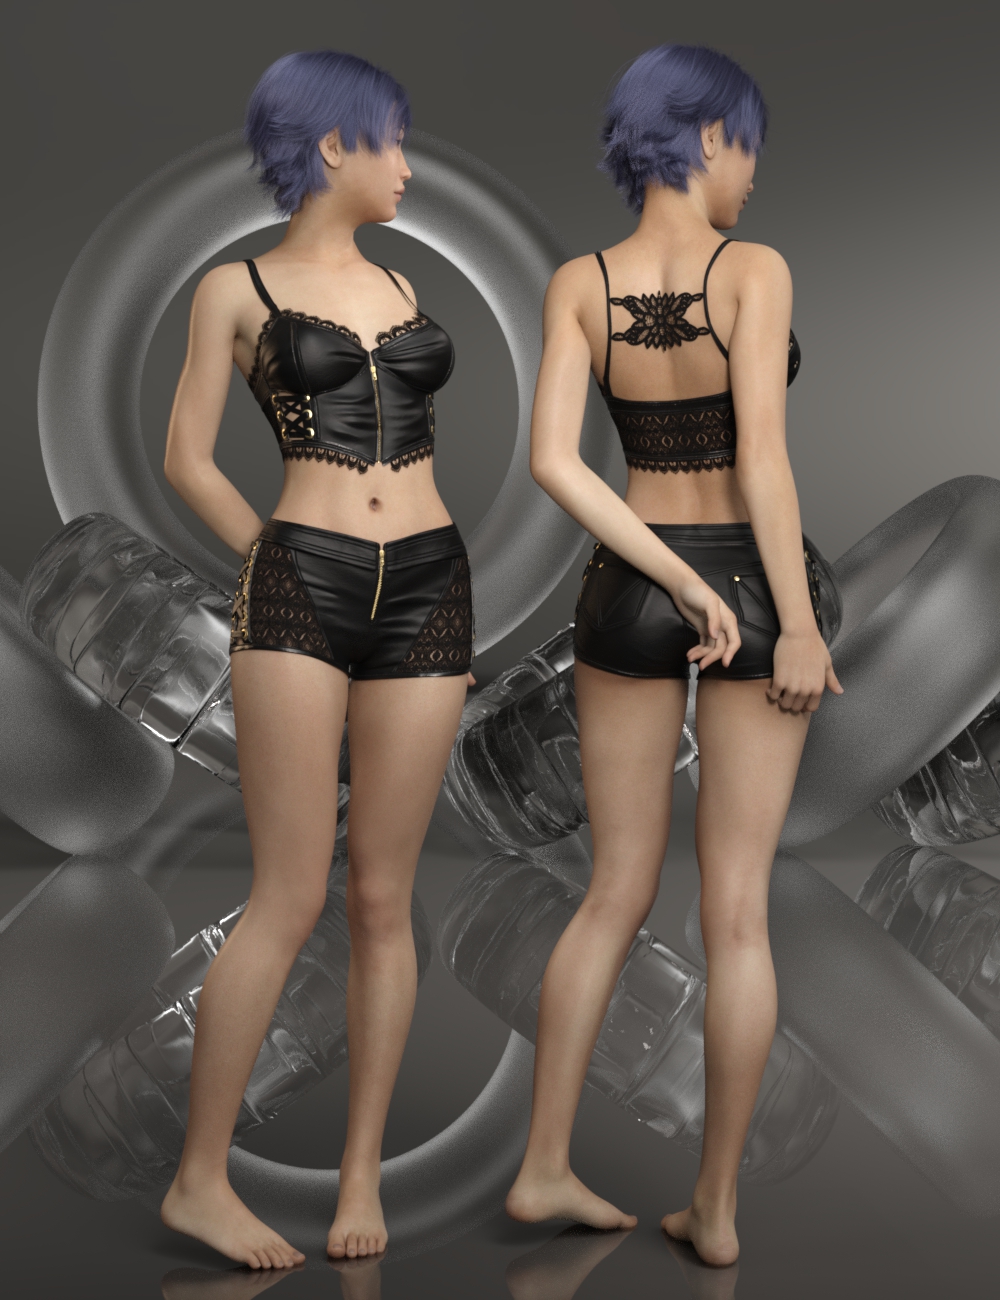 Aimi for Genesis 8 Female by: Warloc, 3D Models by Daz 3D